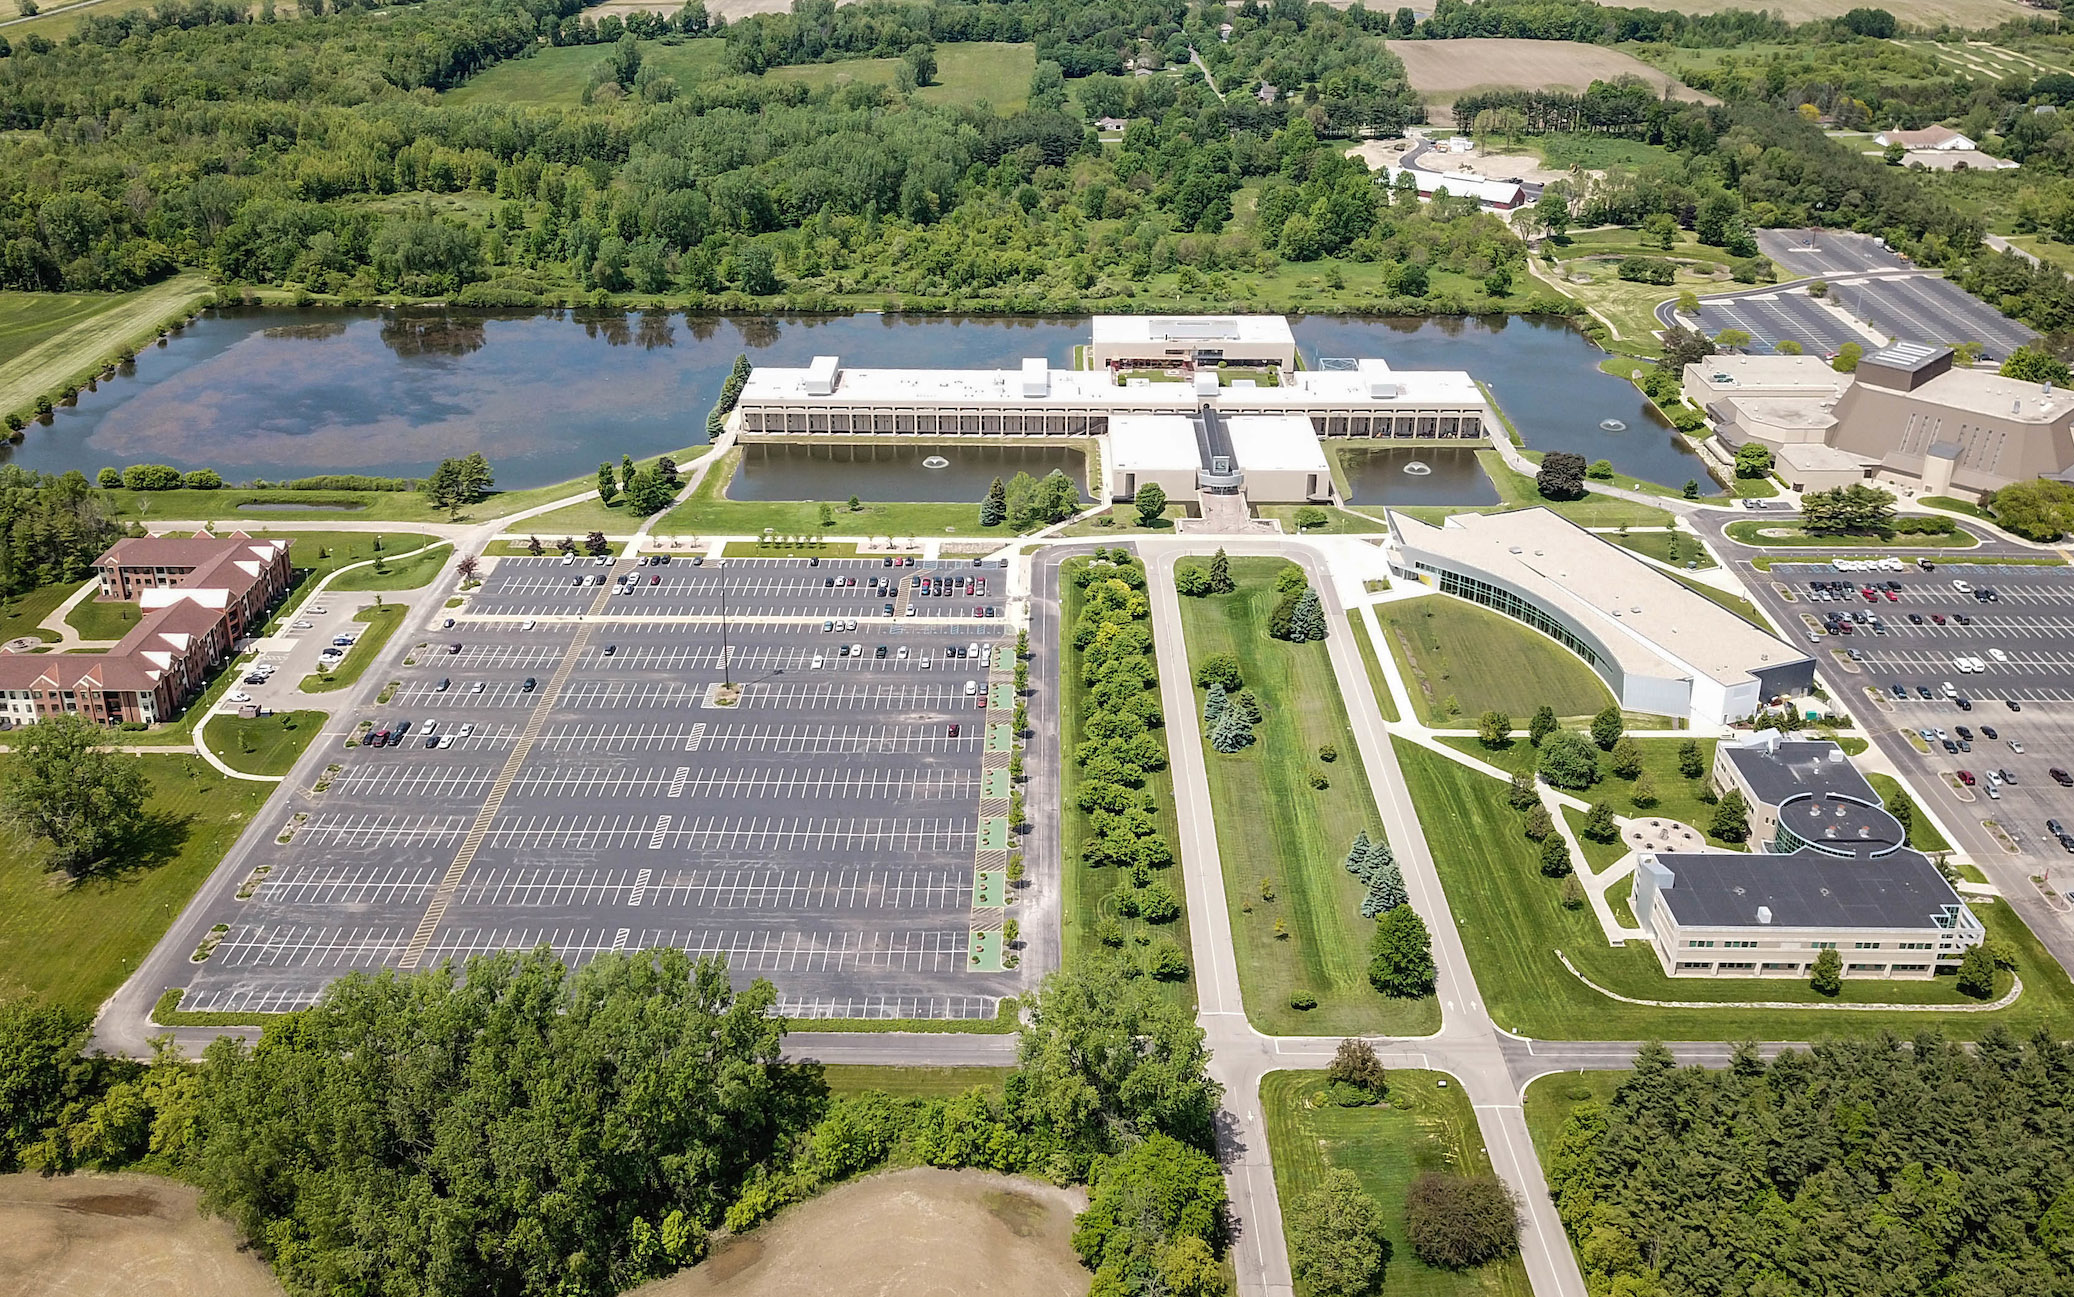 Drone image of Benton Harbor Campus.